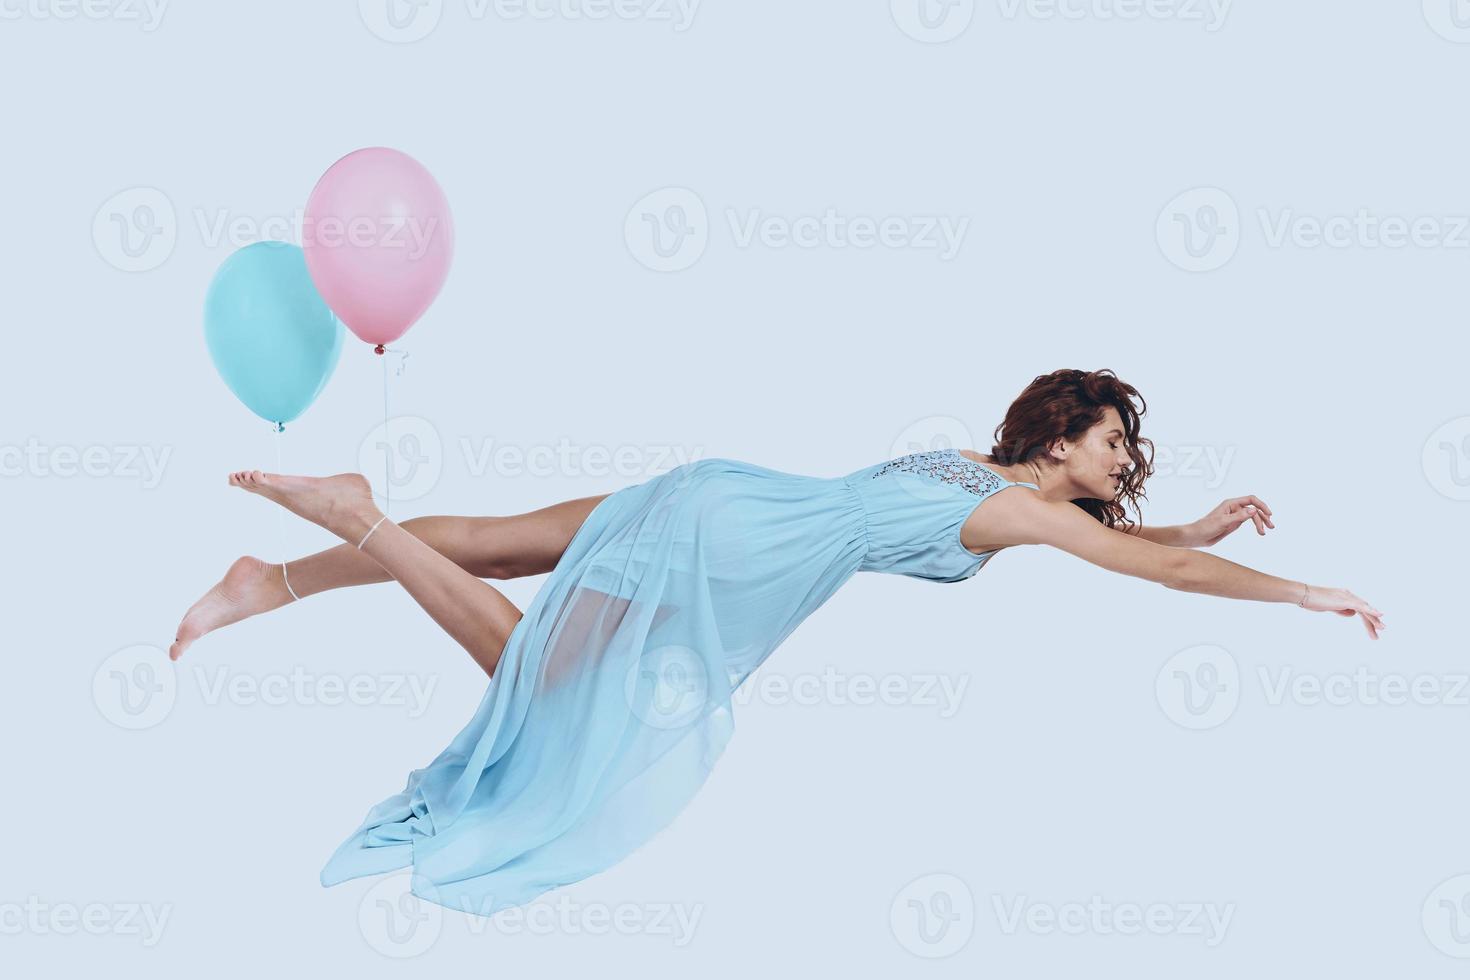 mosca de ensueño. foto de estudio de una joven atractiva con un vestido elegante que mantiene los brazos extendidos mientras se cierne sobre un fondo gris